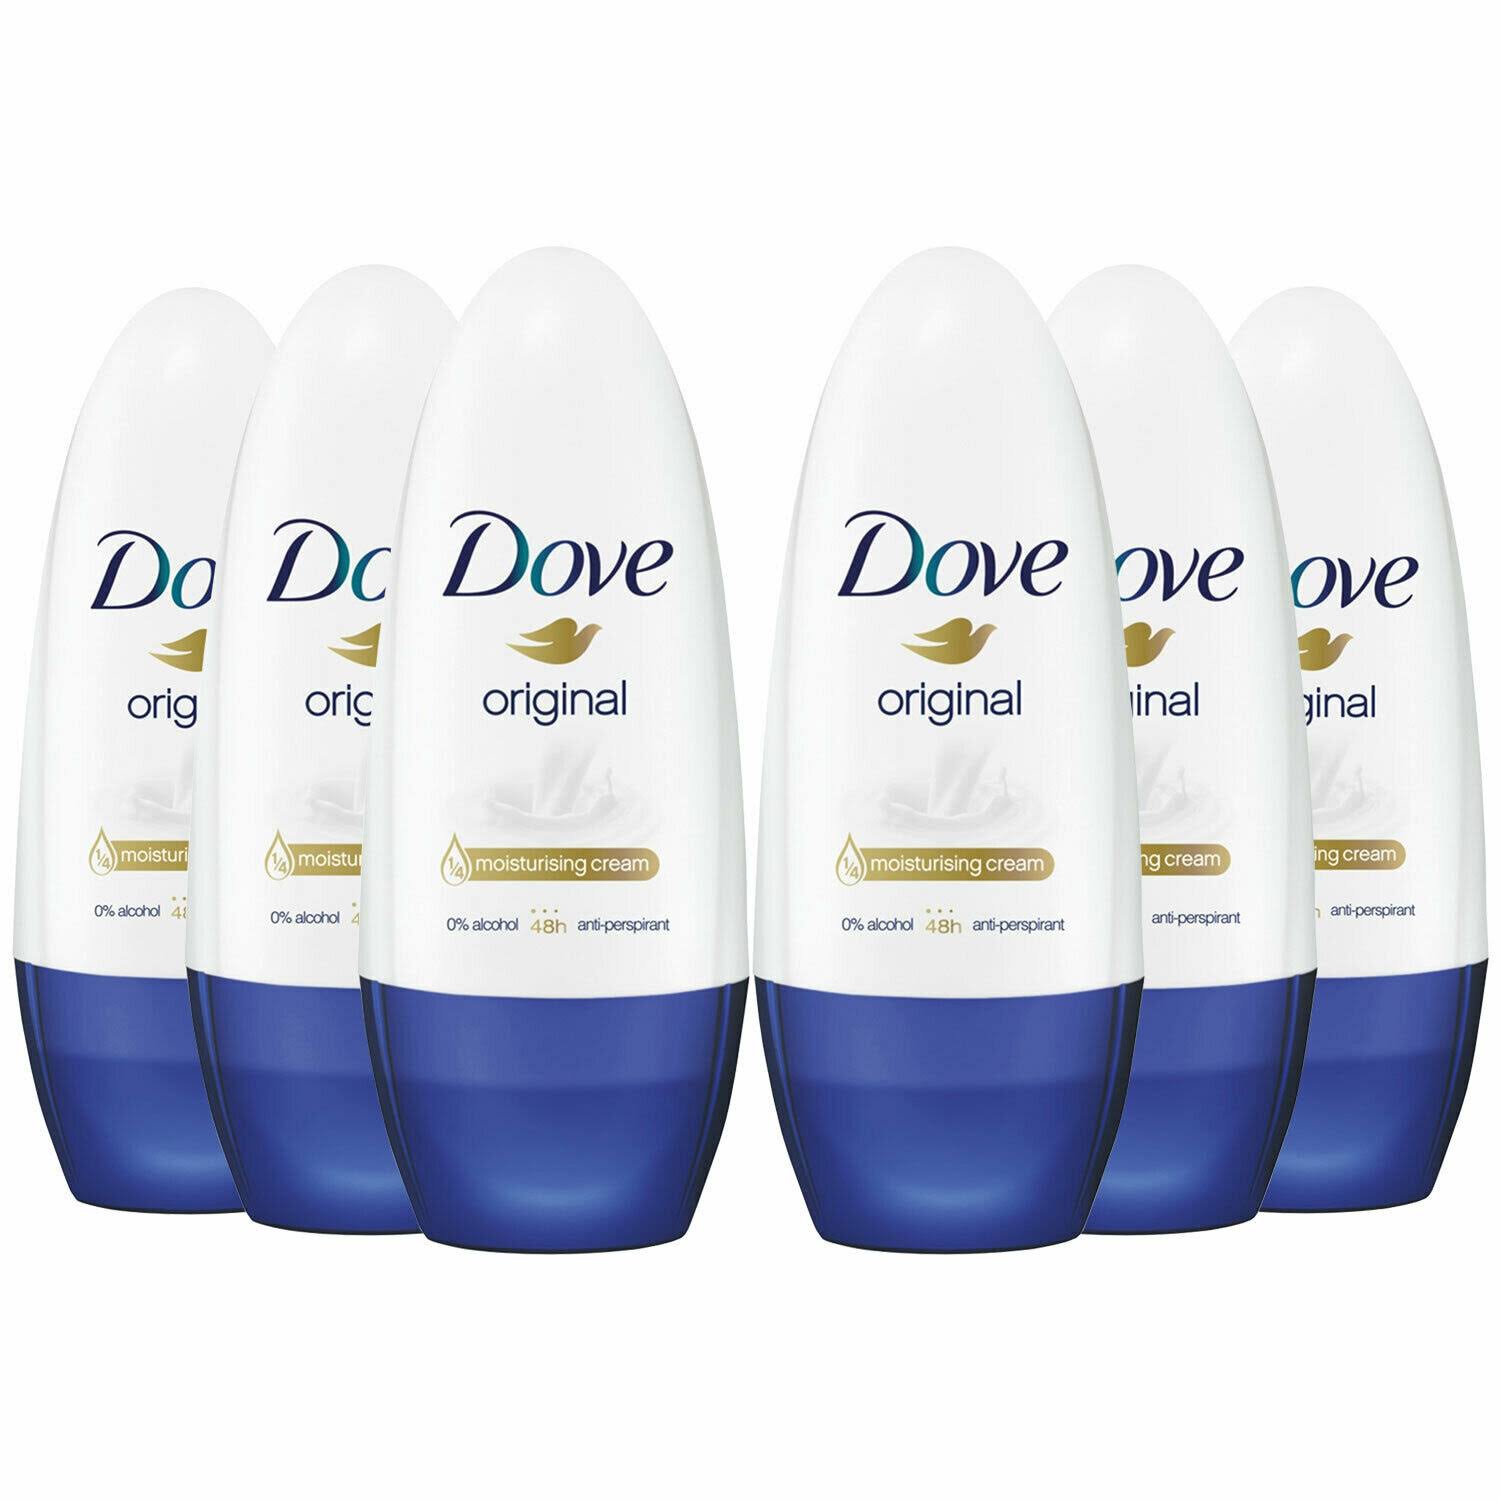 Dove Original Antiperspirant Roll on 50ml - Pack of 6